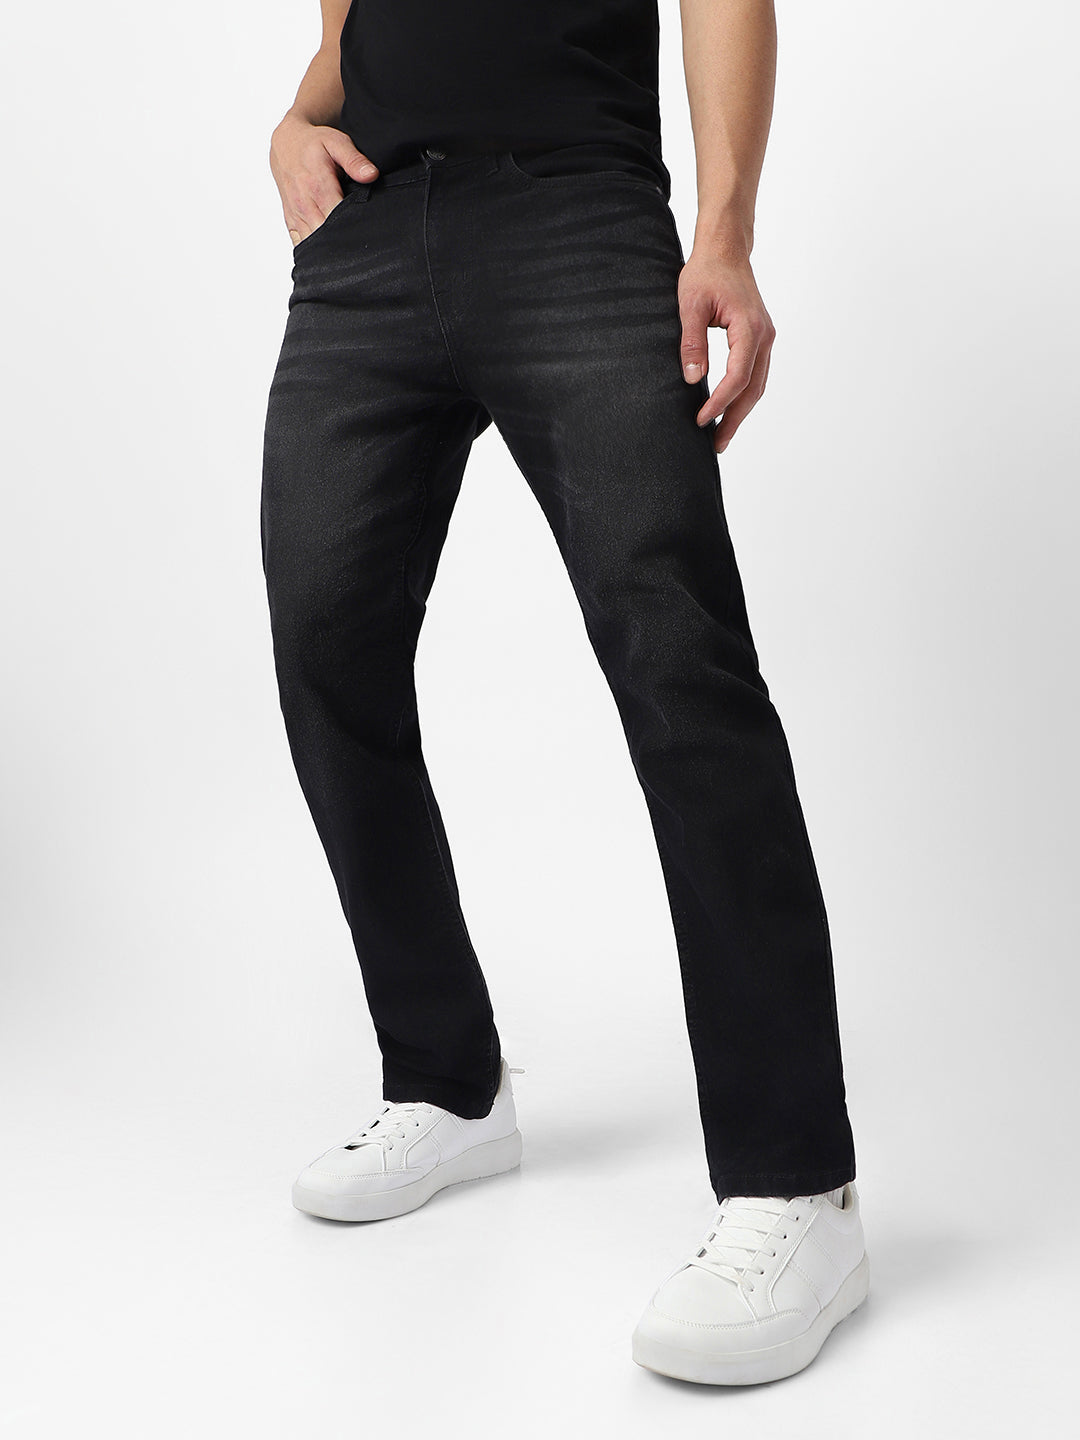 Men's Black Regular Fit Washed Jeans Stretchable